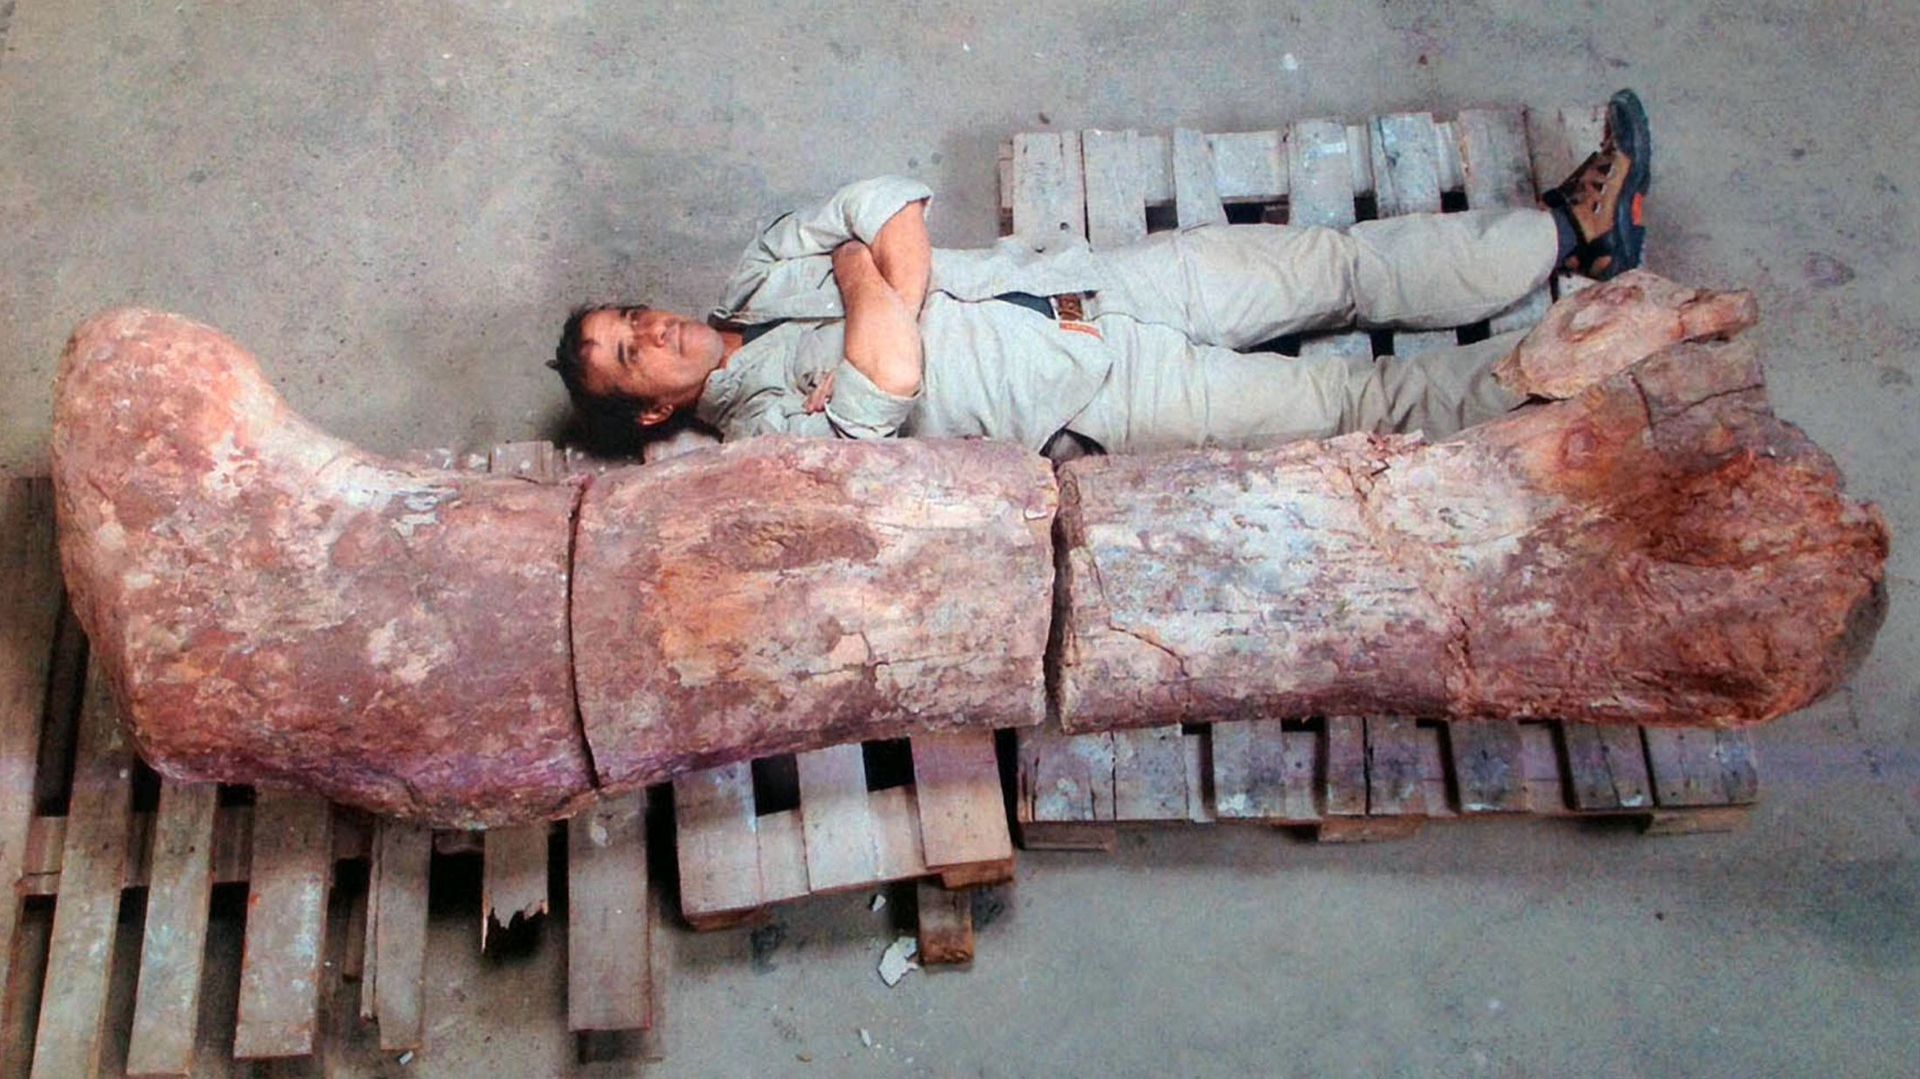 Les sauropodes mesuraient jusqu'à 40 mètres de long et pesaient 70 tonnes